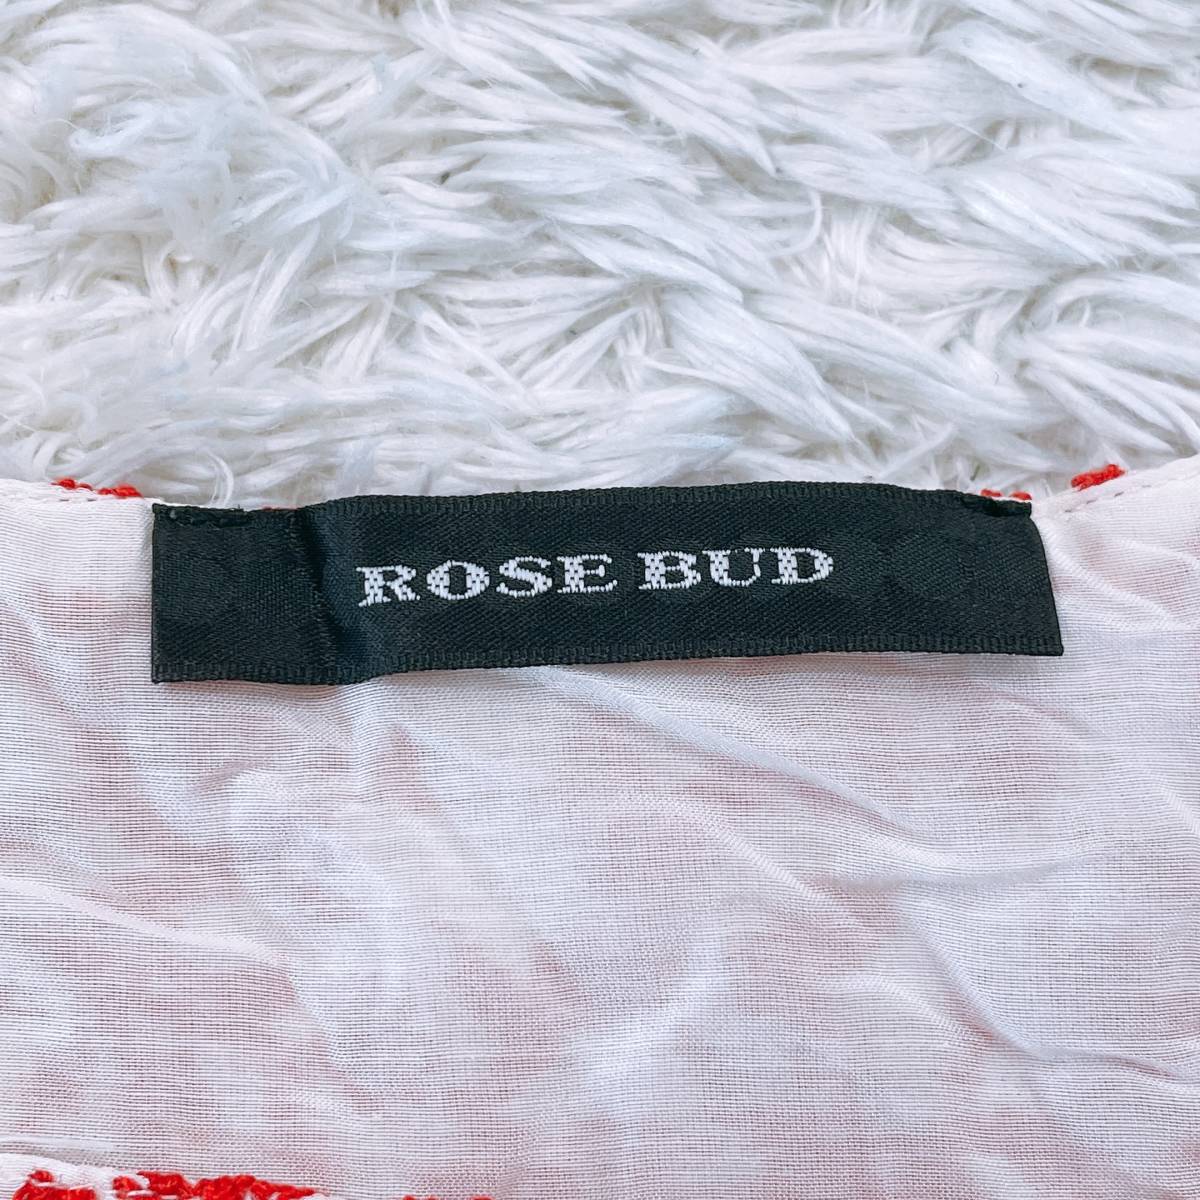 【22453】 良品 ROSE BUD ローズバッド トップス ブラウス ホワイト 白 レッド 赤 S 半袖 模様 かわいい フリル風 レディース 女性用